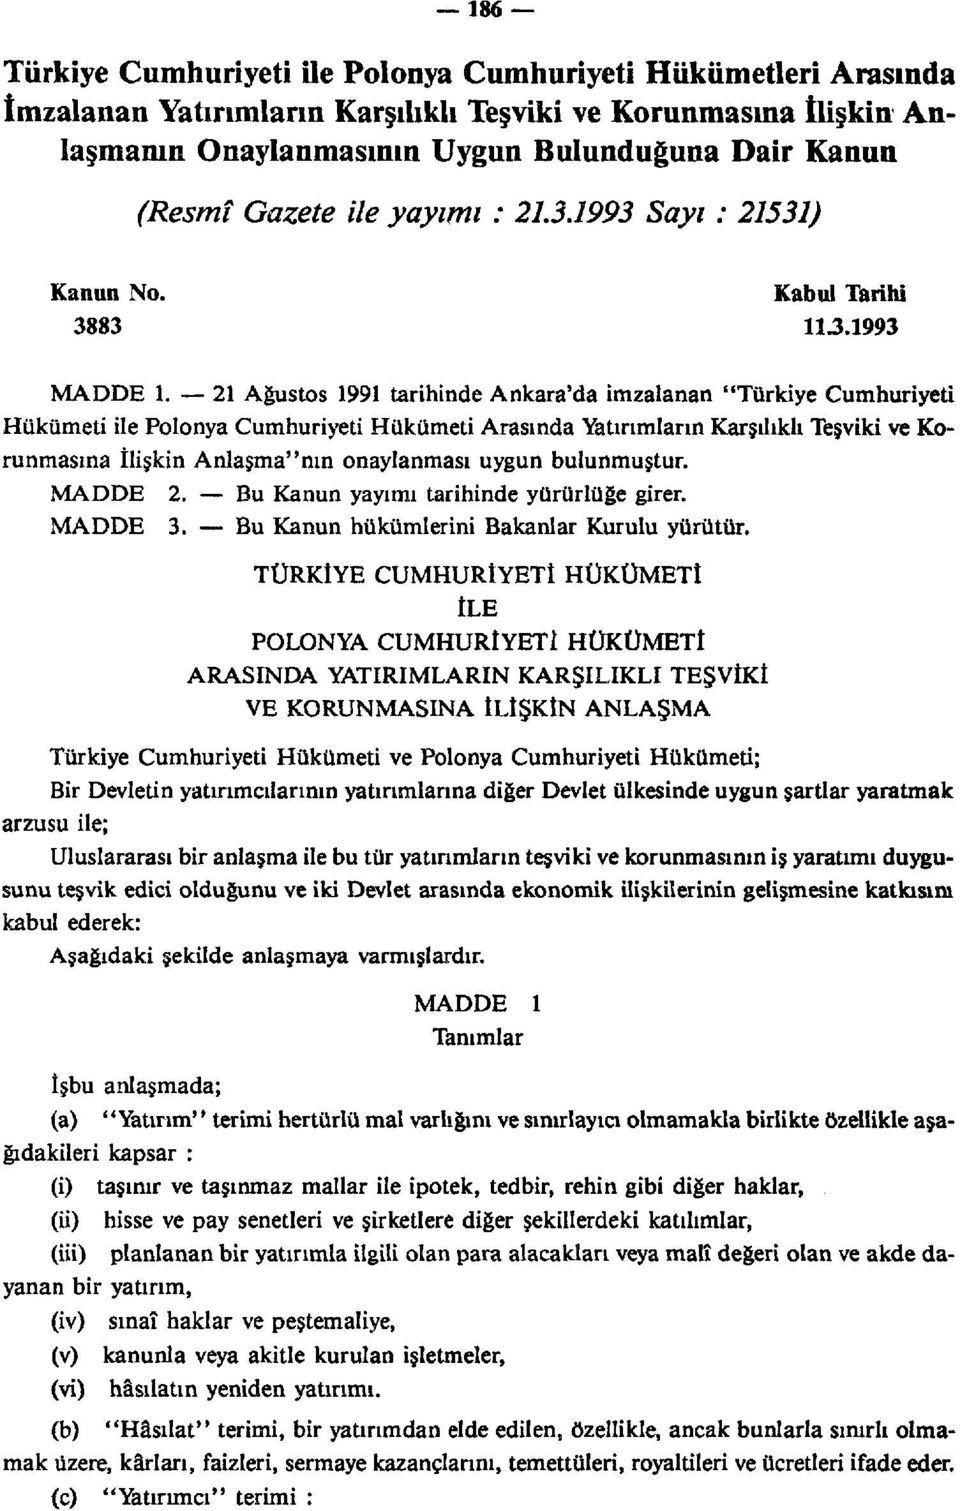 21 Ağustos 1991 tarihinde Ankara'da imzalanan "Türkiye Cumhuriyeti Hükümeti ile Polonya Cumhuriyeti Hükümeti Arasında Yatırımların Karşılıklı Teşviki ve Korunmasına İlişkin Anlaşma"nın onaylanması